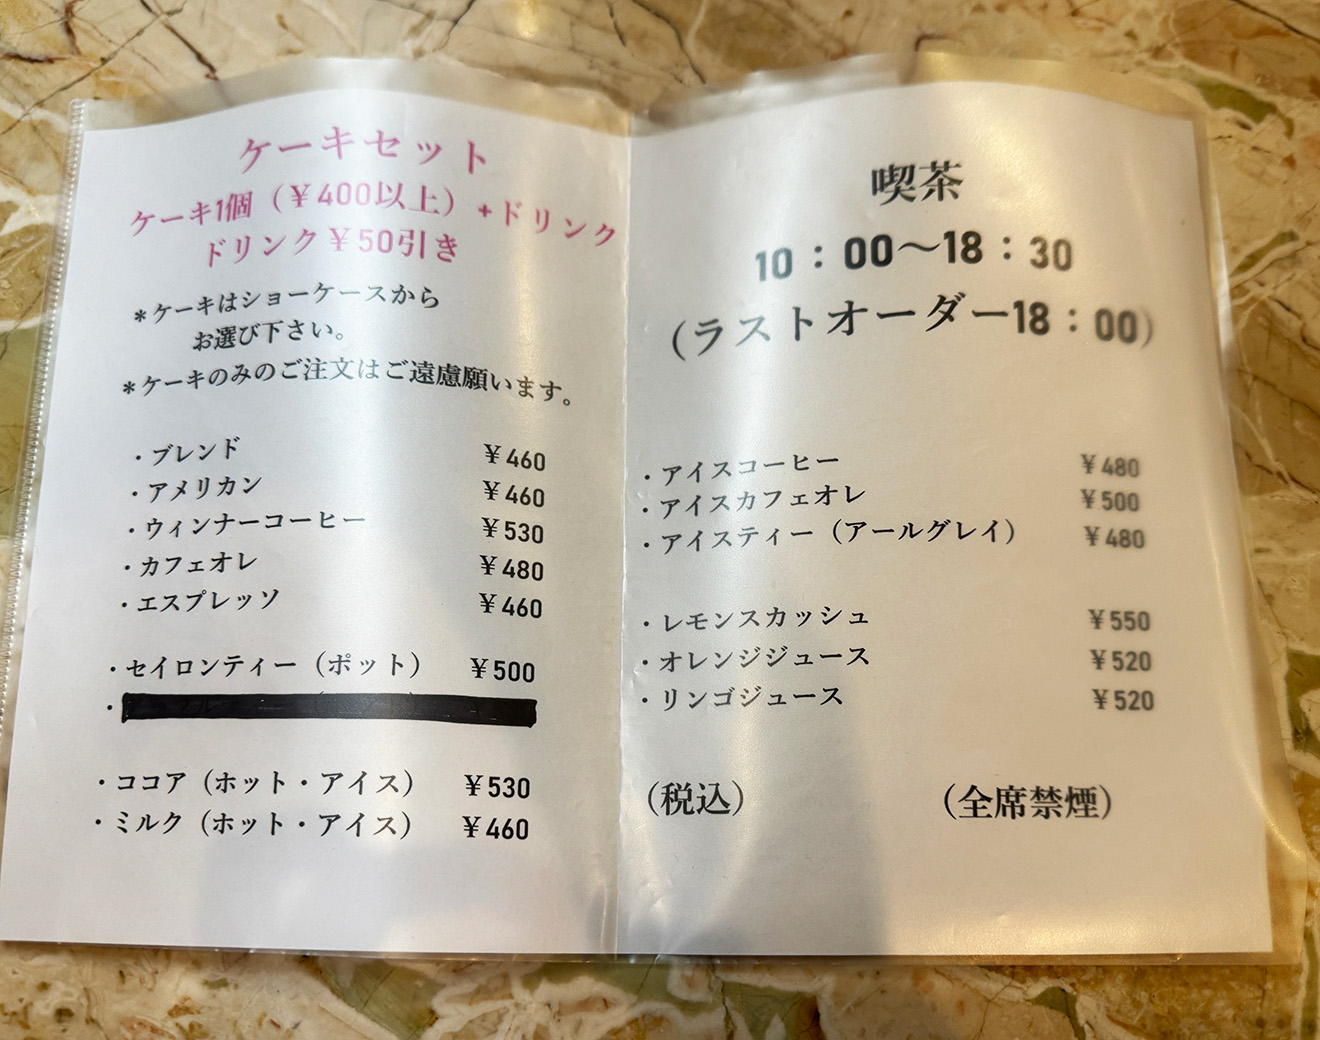 「アリマ洋菓子店」の喫茶メニュー